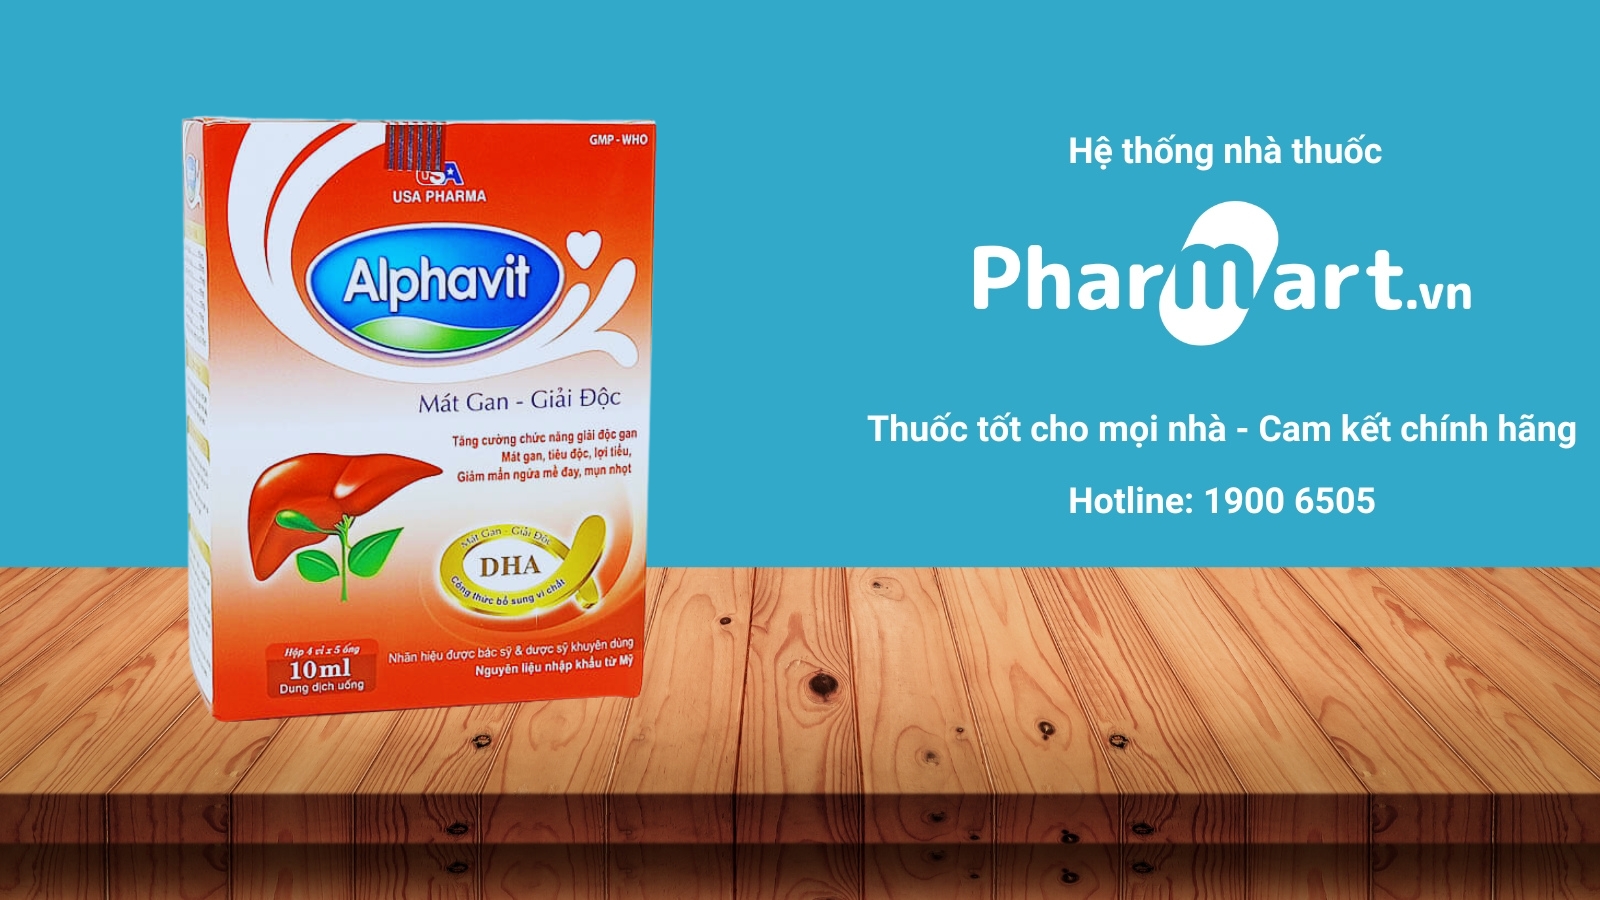 Mua ngay Alphavit chính hãng tại Pharmart.vn